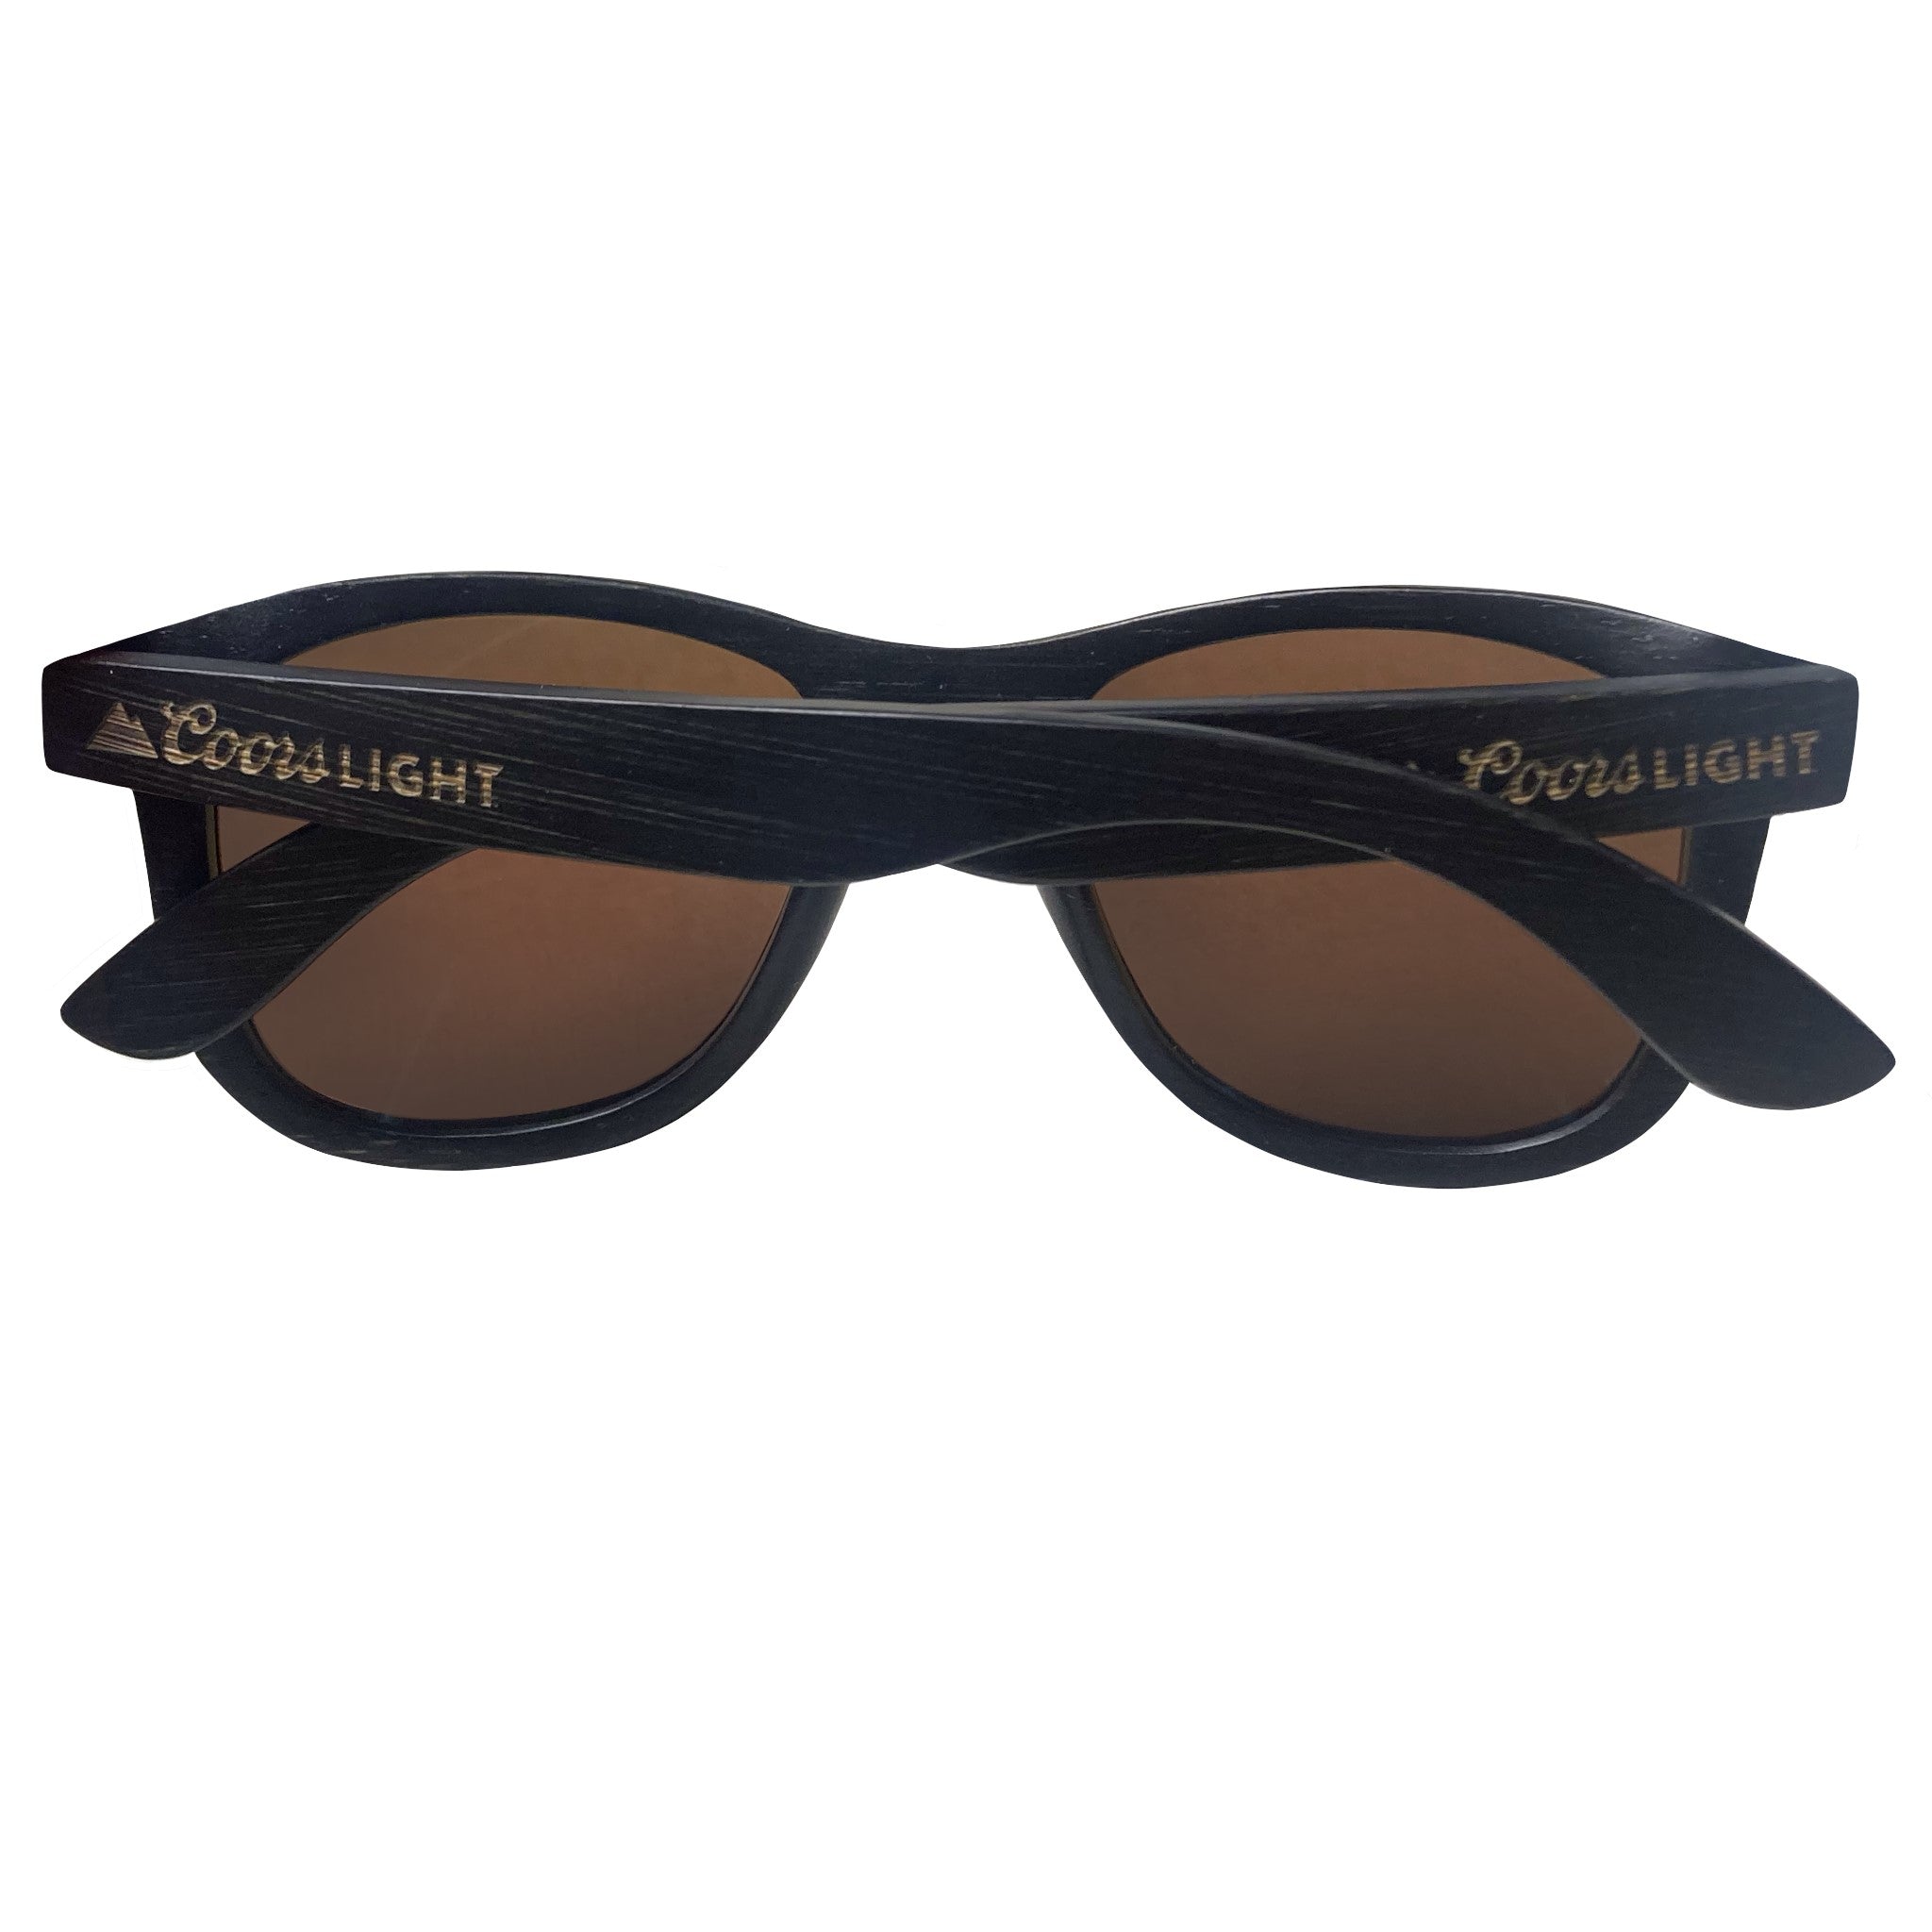 Glassy Wood Frame Sunglasses – Coors Light Shop